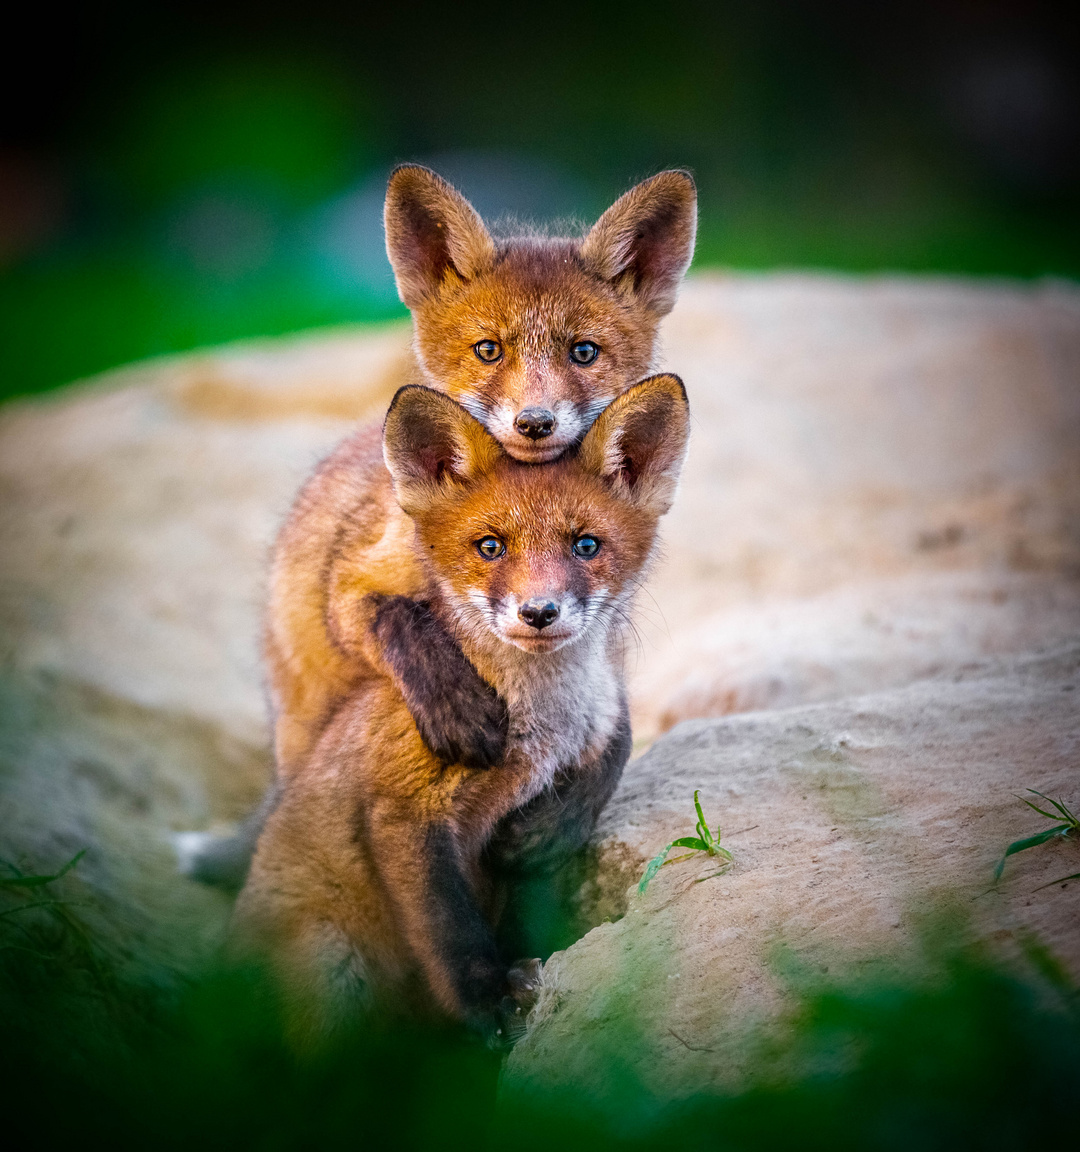 Farkasszemet néztek a fotóssal az ölelkező rókakölykök | Sokszínű vidék